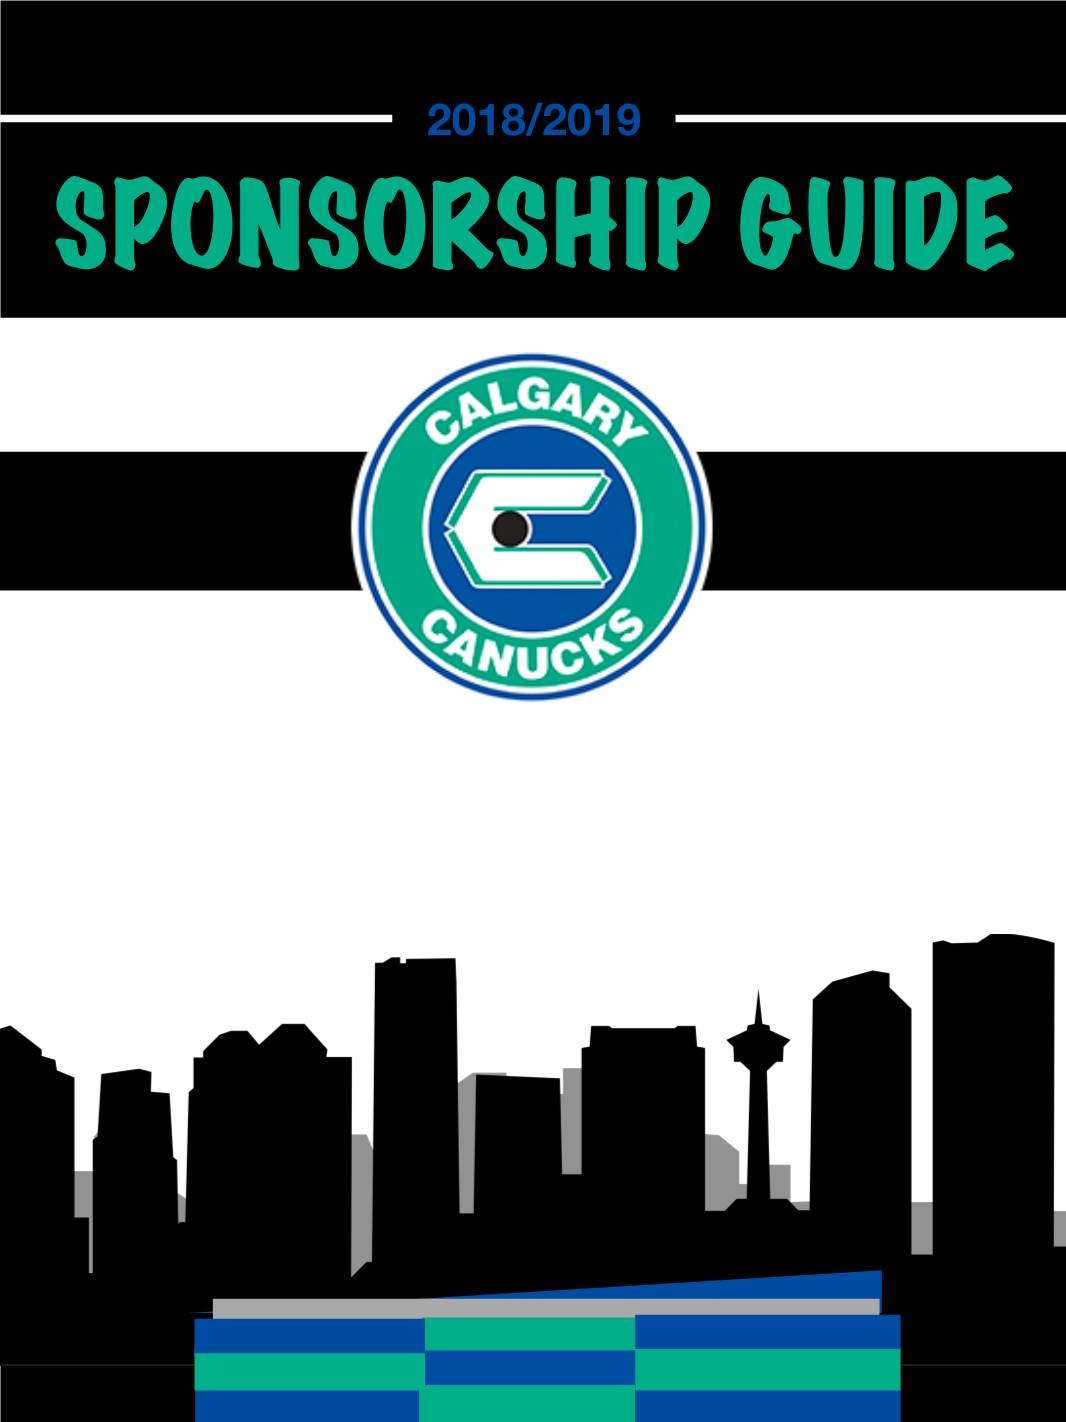 Sponsorship Guide Canucks Hockey